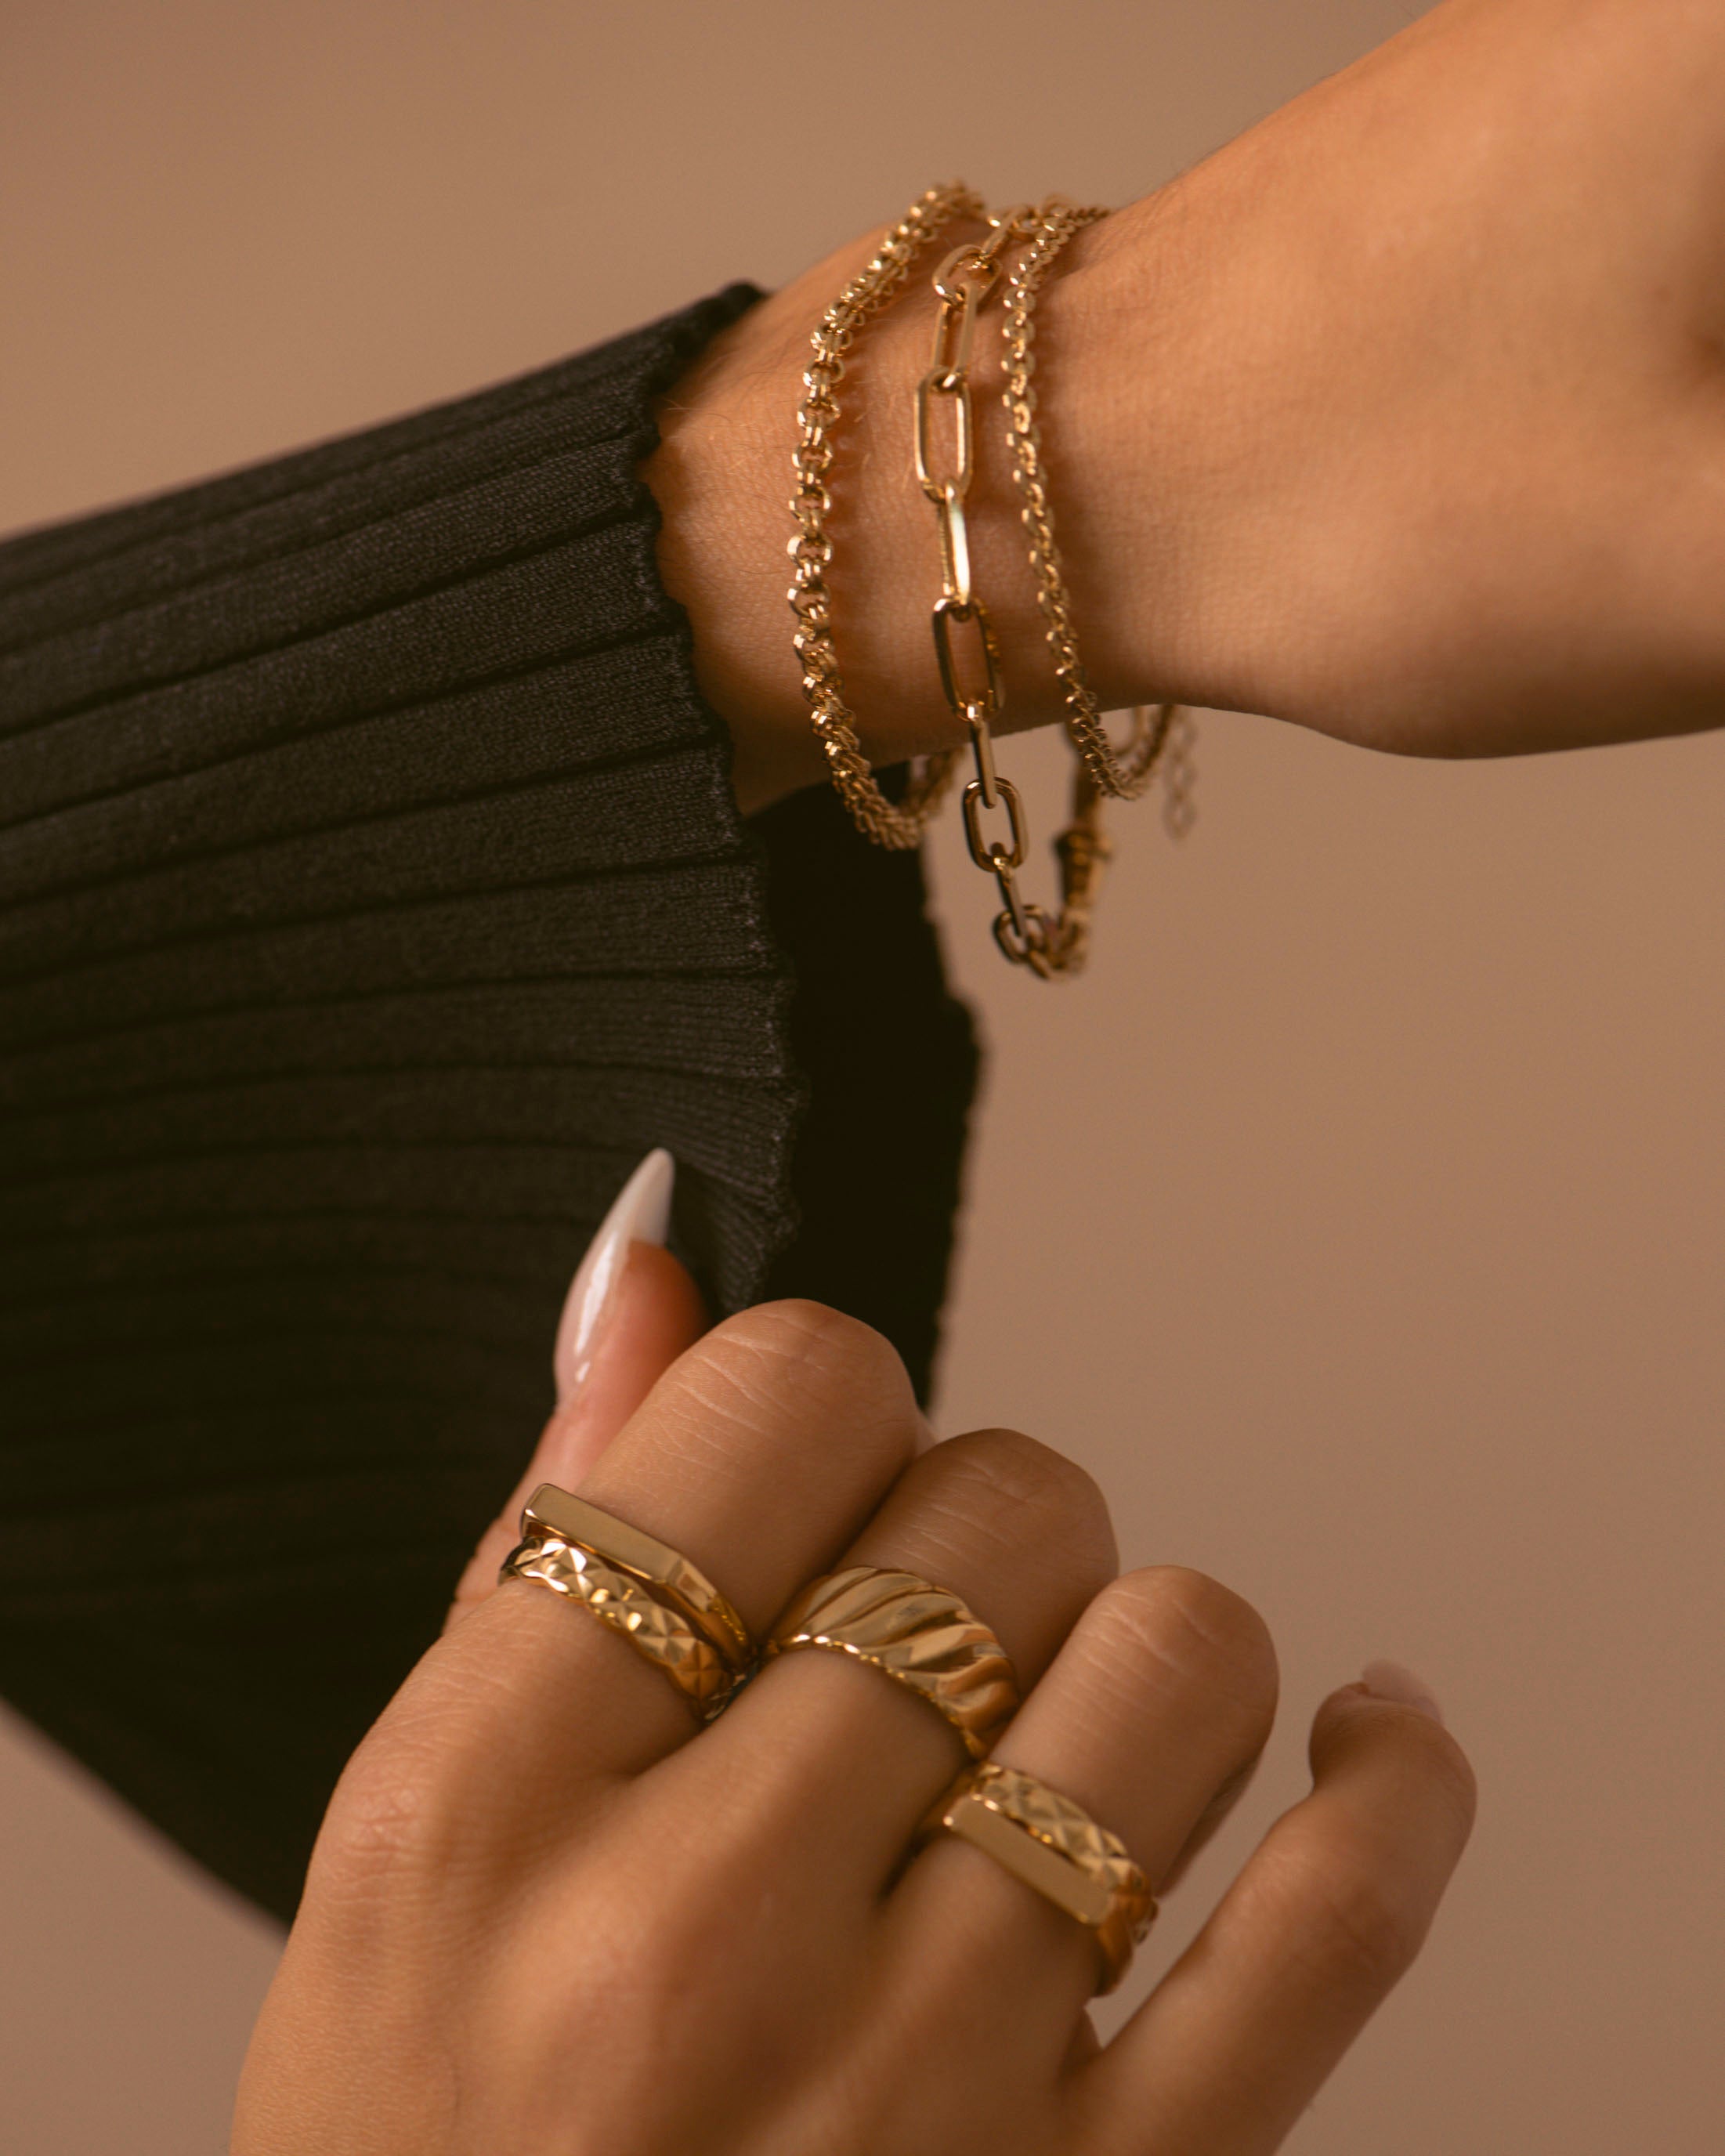 Association de trois bracelets tendances made in France, composée d'un bracelet en chaîne rectangle, d'un bracelet fin avec une chaîne en maille soleil, et d'un bracelet en maille ronde épais, avec plusieurs bagues ajustables, en plaqué or 3 microns 18 carats.